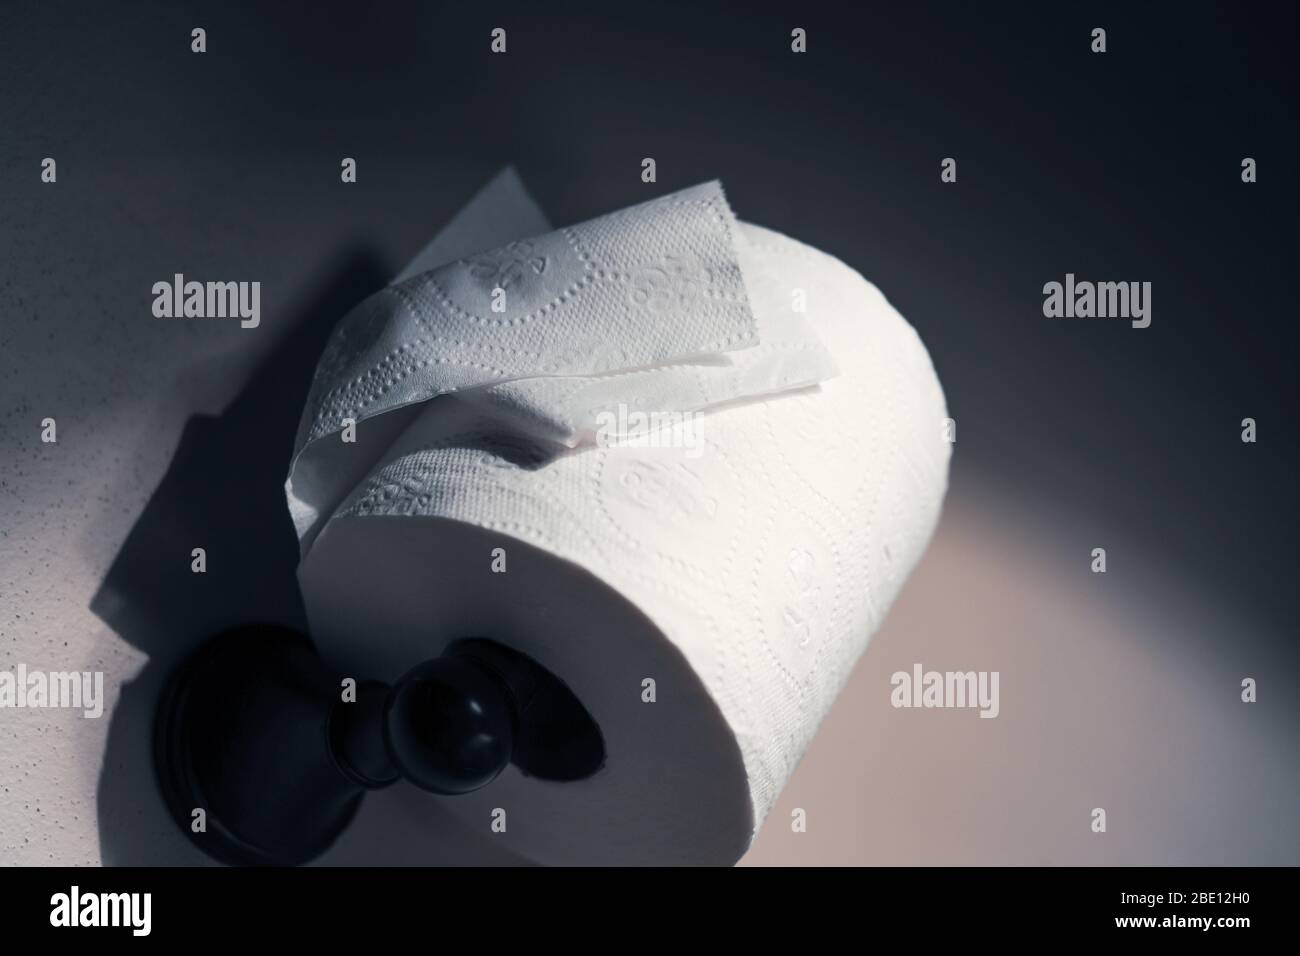 Suministro de papel higiénico fotografías e imágenes de alta resolución -  Alamy